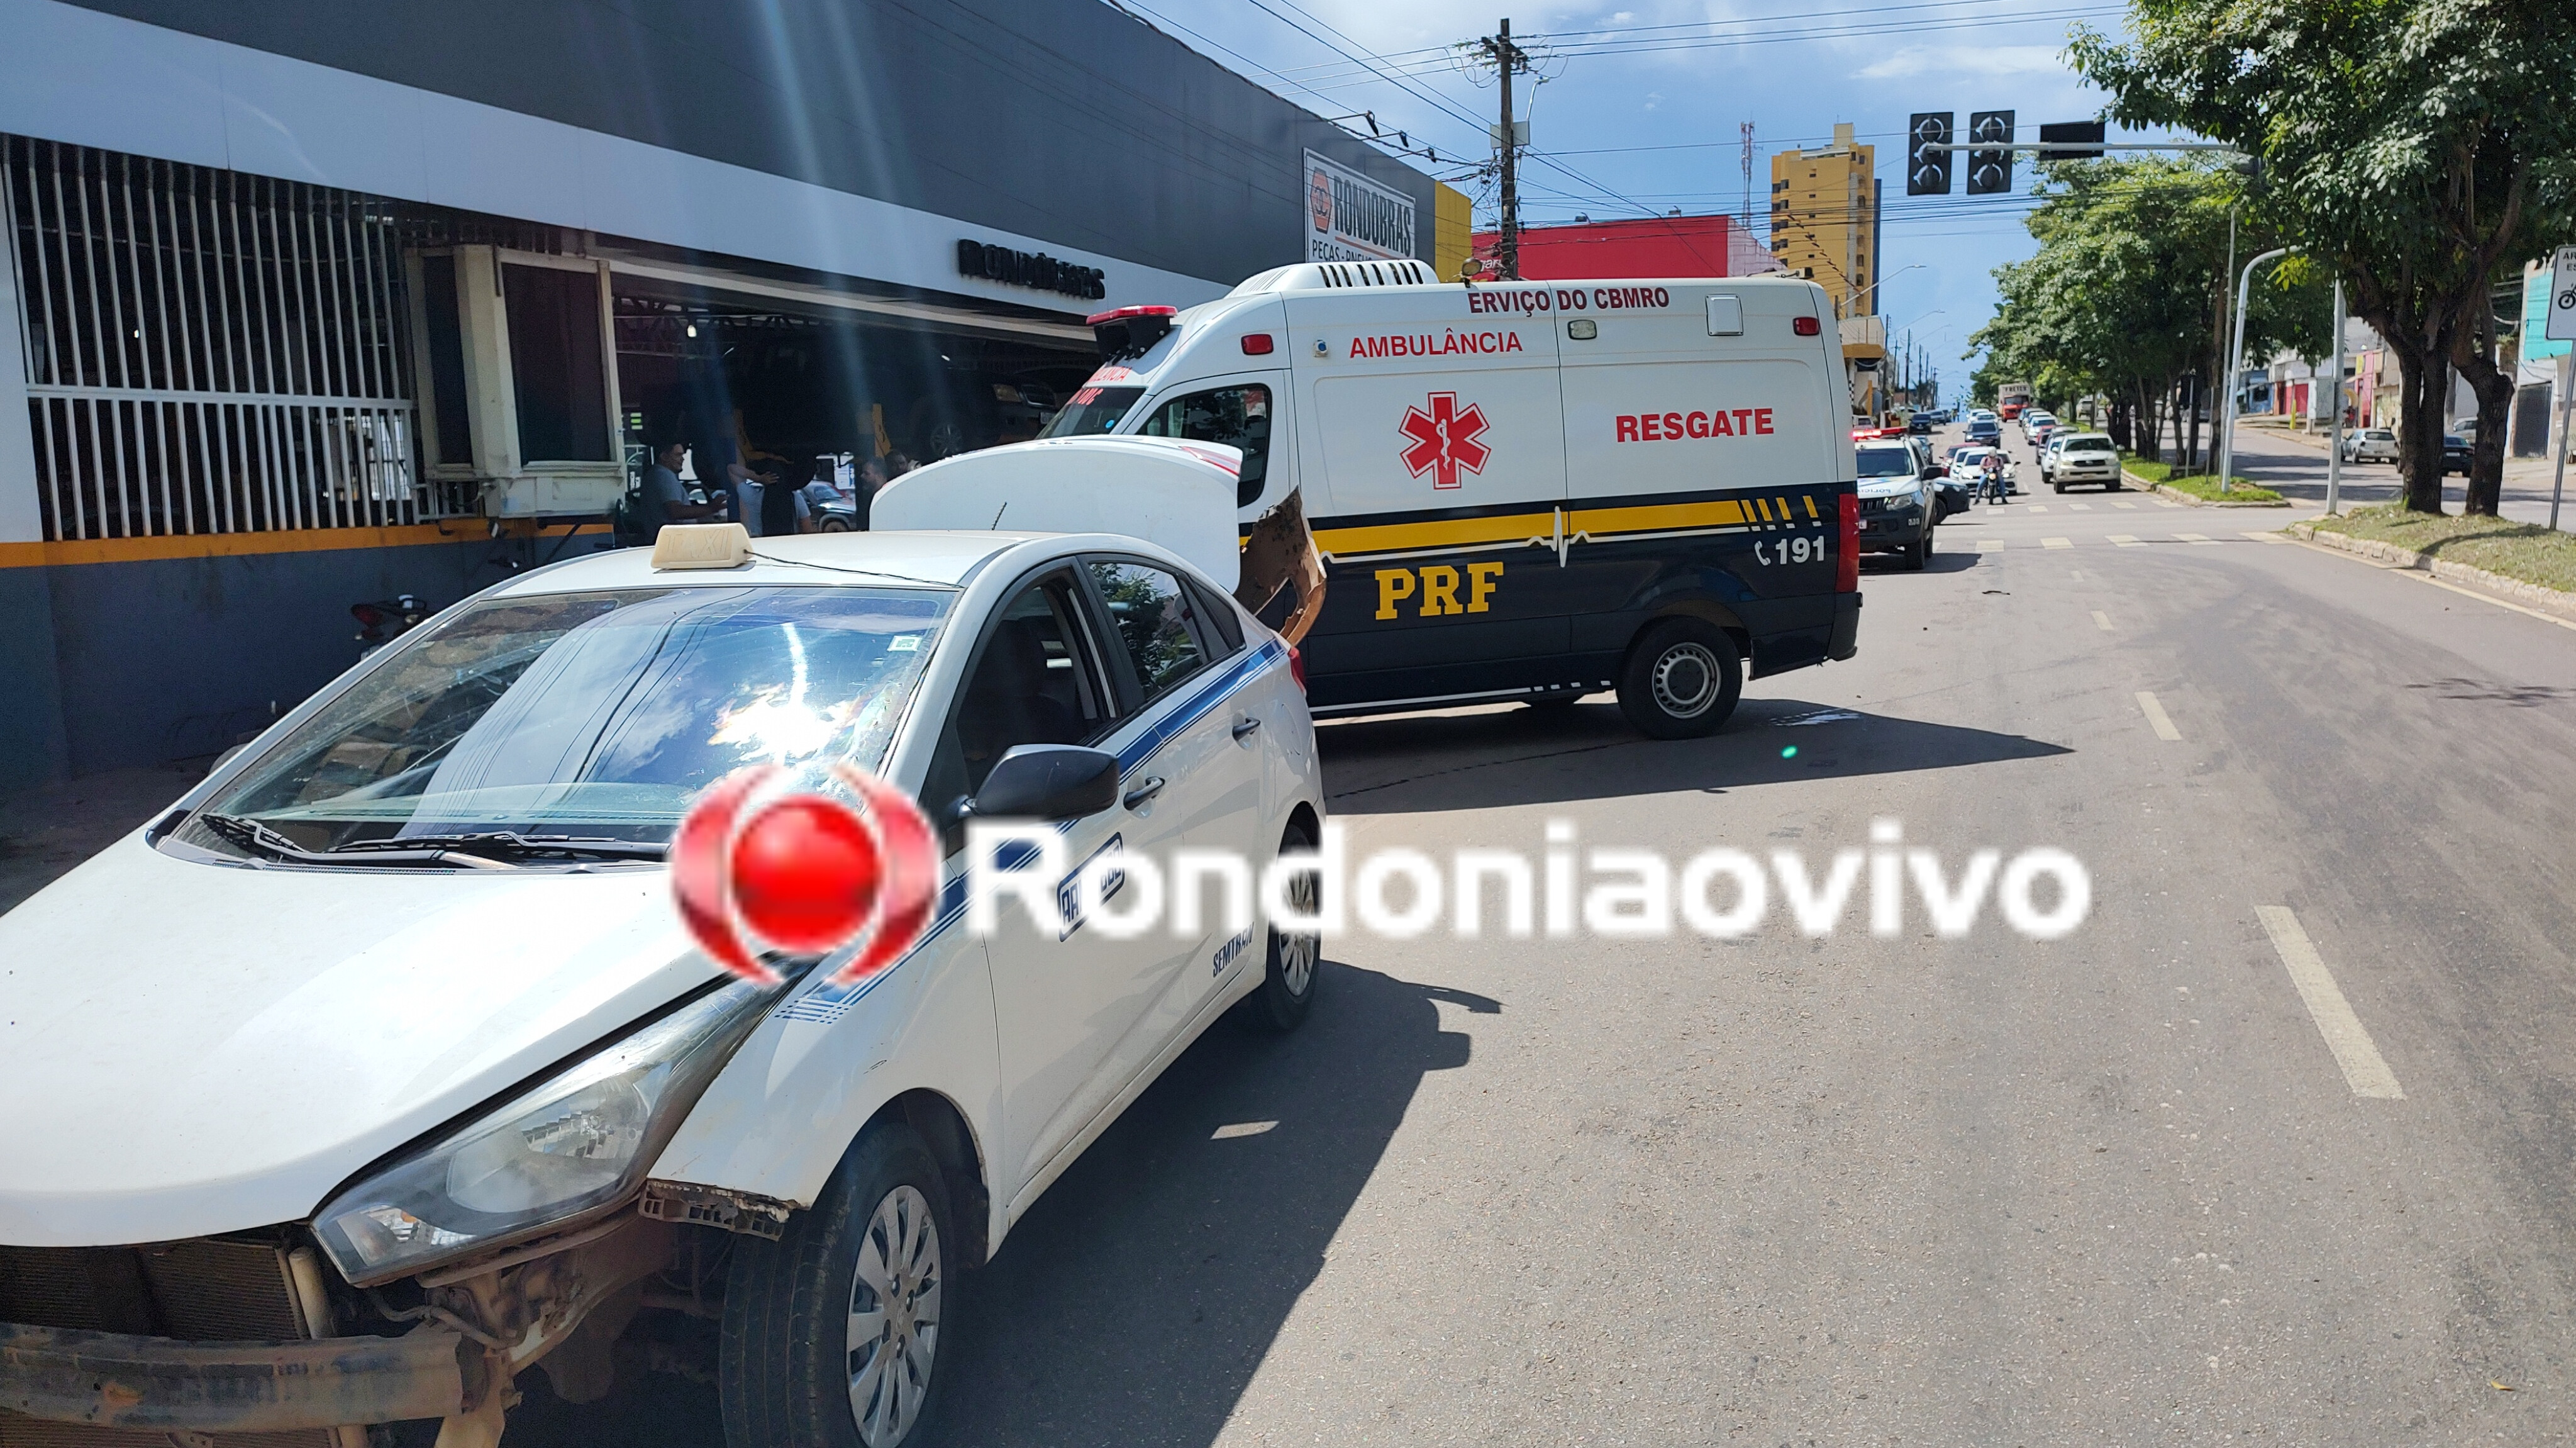 NO SEMÁFORO: Taxista provoca grave acidente com motociclista ao fazer retorno proibido 